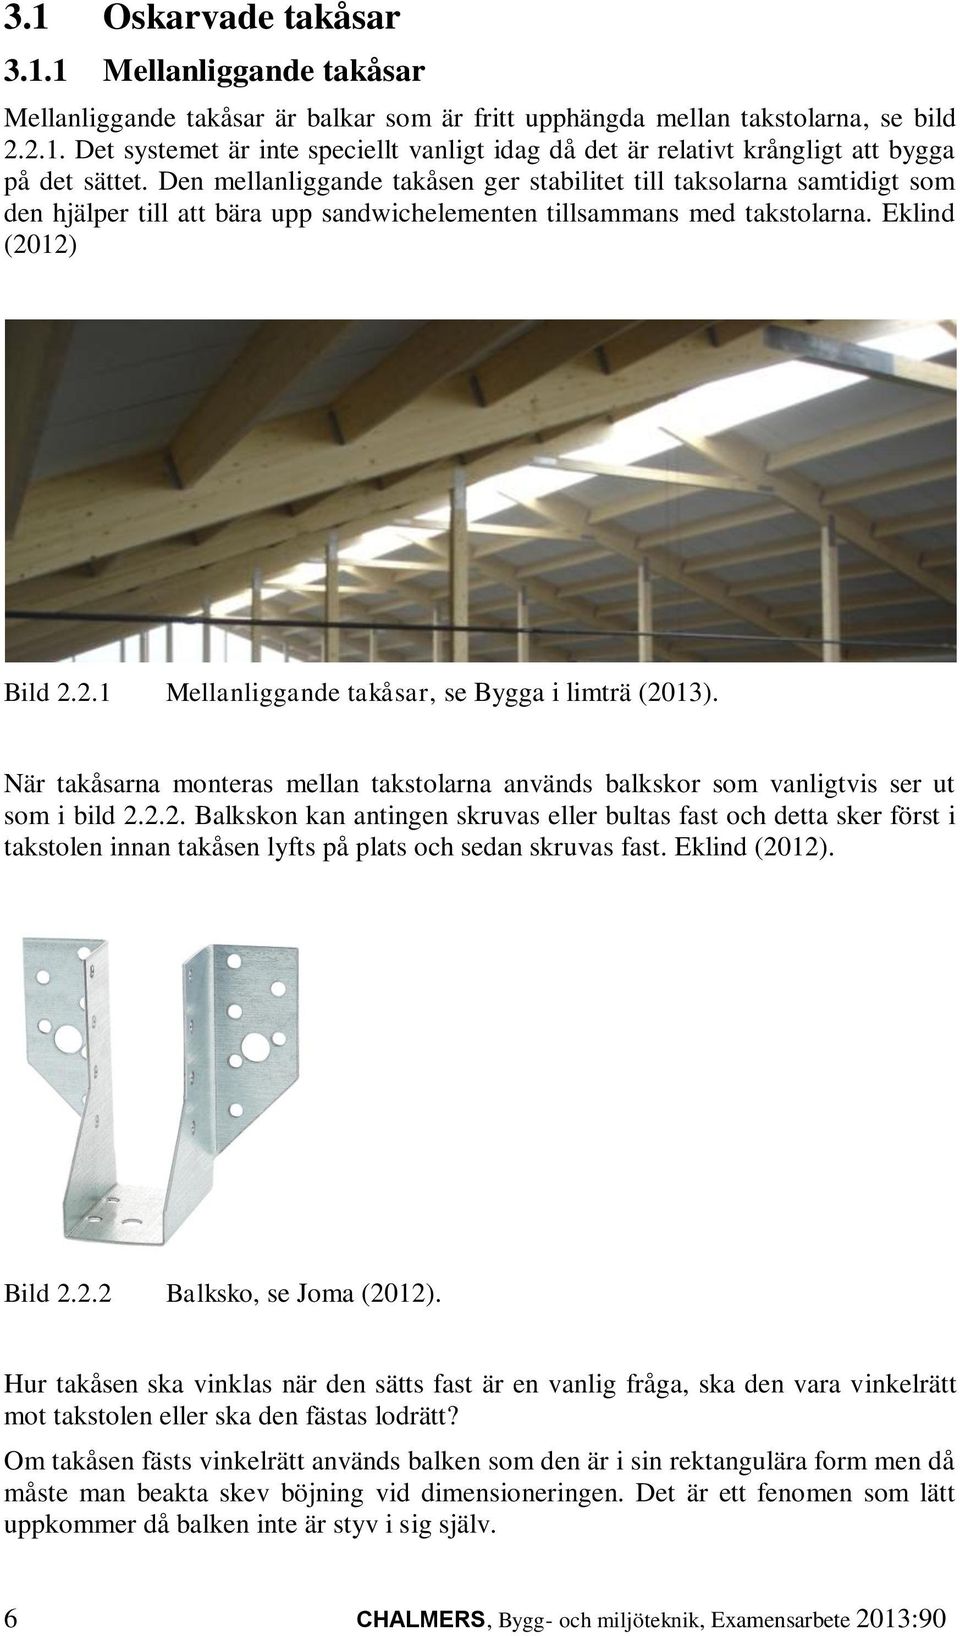 12) Bild 2.2.1 Mellanliggande takåsar, se Bygga i limträ (2013). När takåsarna monteras mellan takstolarna används balkskor som vanligtvis ser ut som i bild 2.2.2. Balkskon kan antingen skruvas eller bultas fast och detta sker först i takstolen innan takåsen lyfts på plats och sedan skruvas fast.